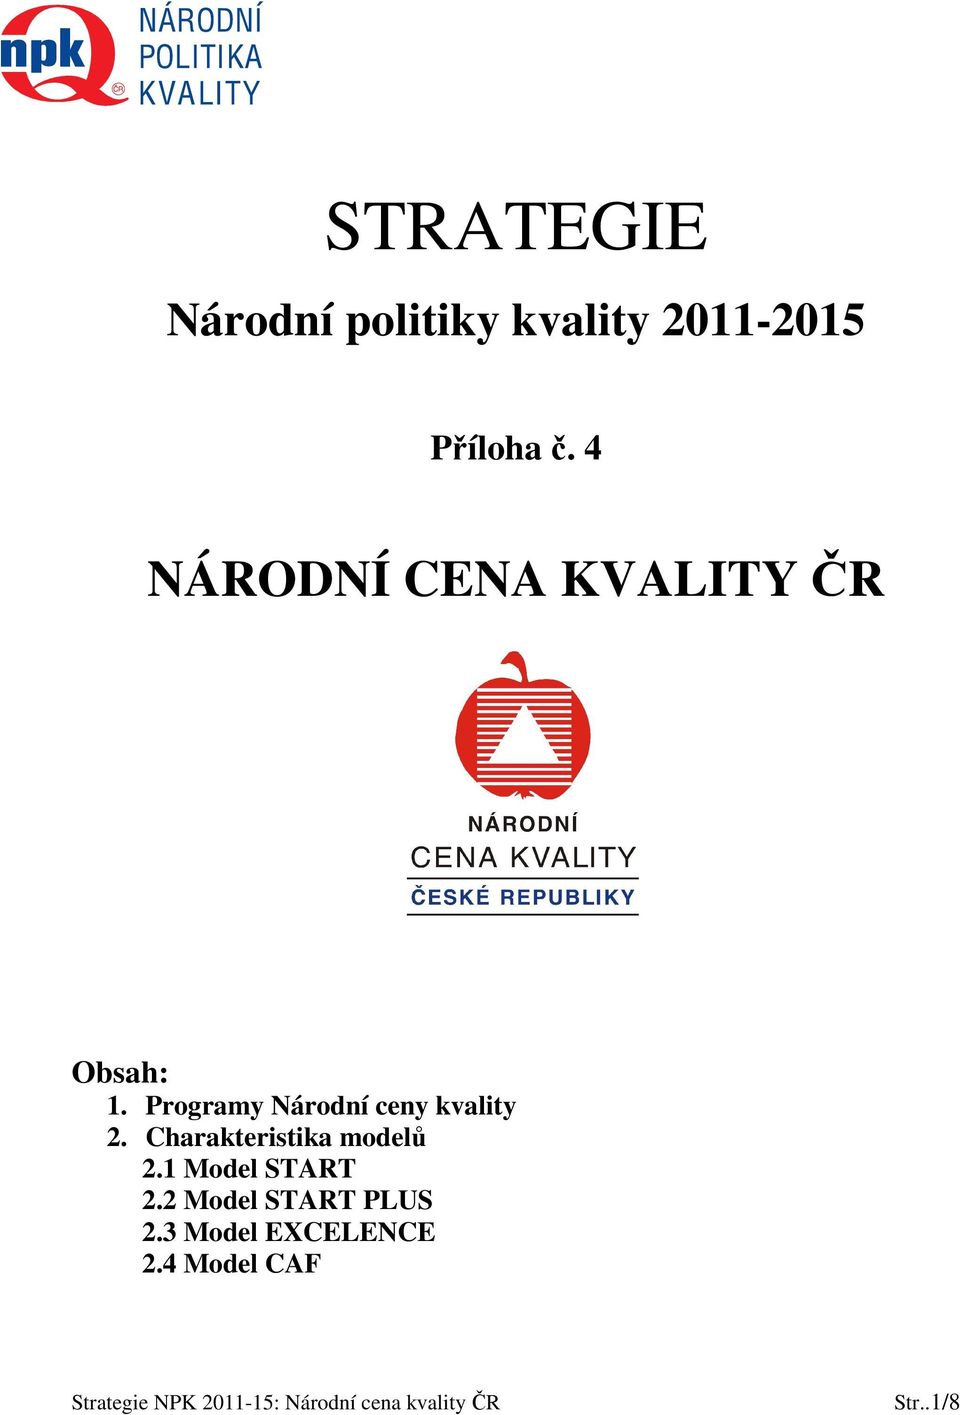 Programy Národní ceny kvality 2.